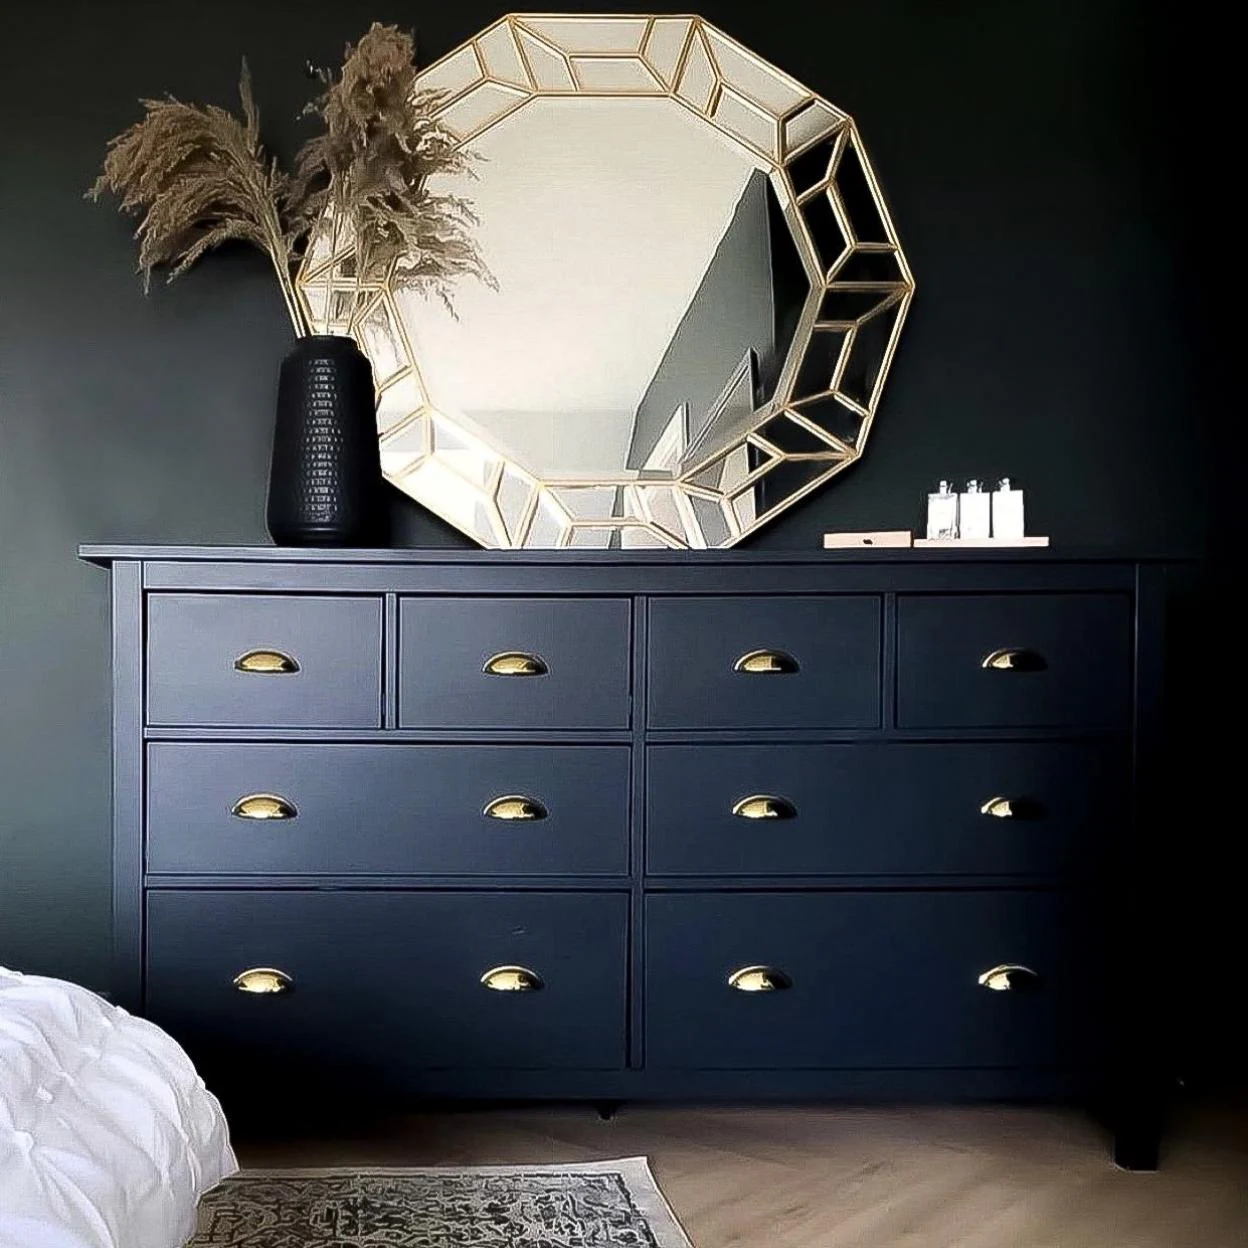 Viajero Parásito Hospitalidad El mueble más bonito y versátil de IKEA es esta cómoda baratísima que  puedes personalizar con estos trucos DIY que arrasan en Pinterest e  Instagram | Mujer Hoy